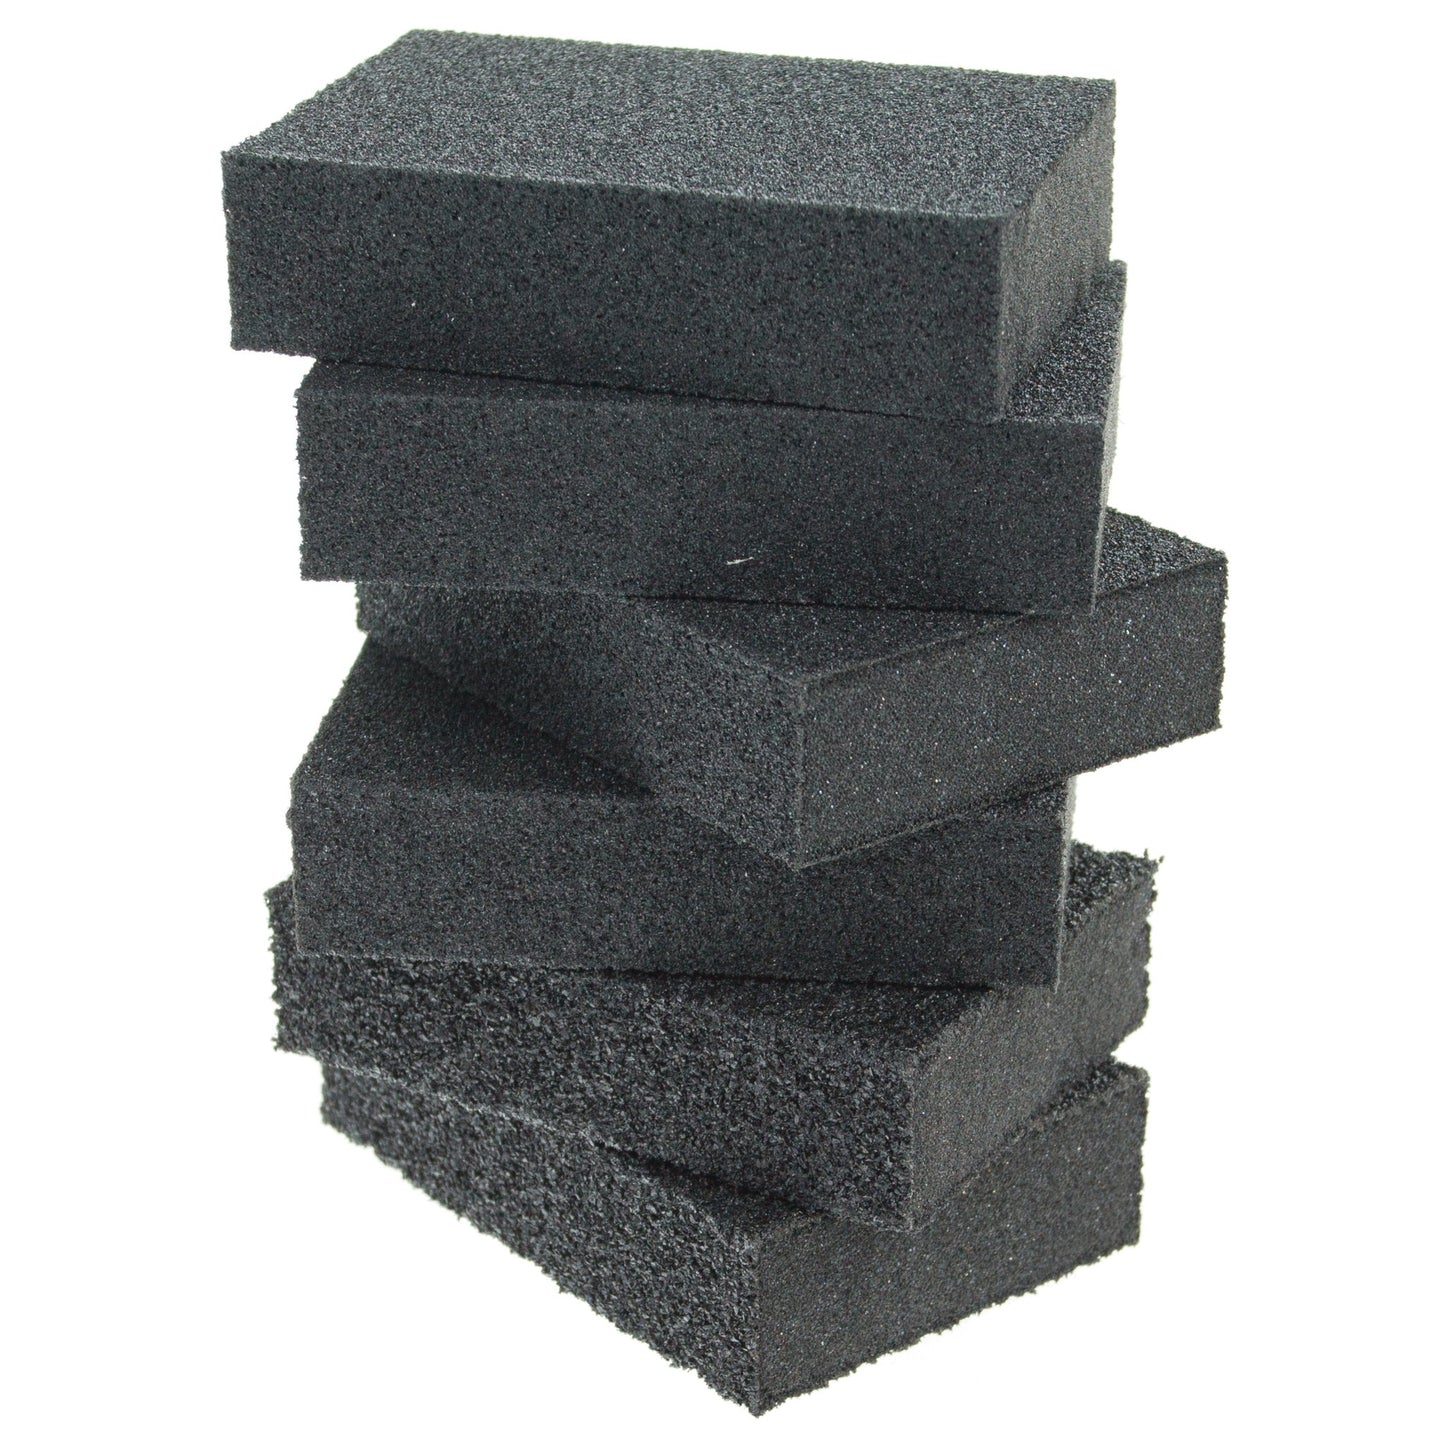 Abrasive Sanding Sponge Blocks